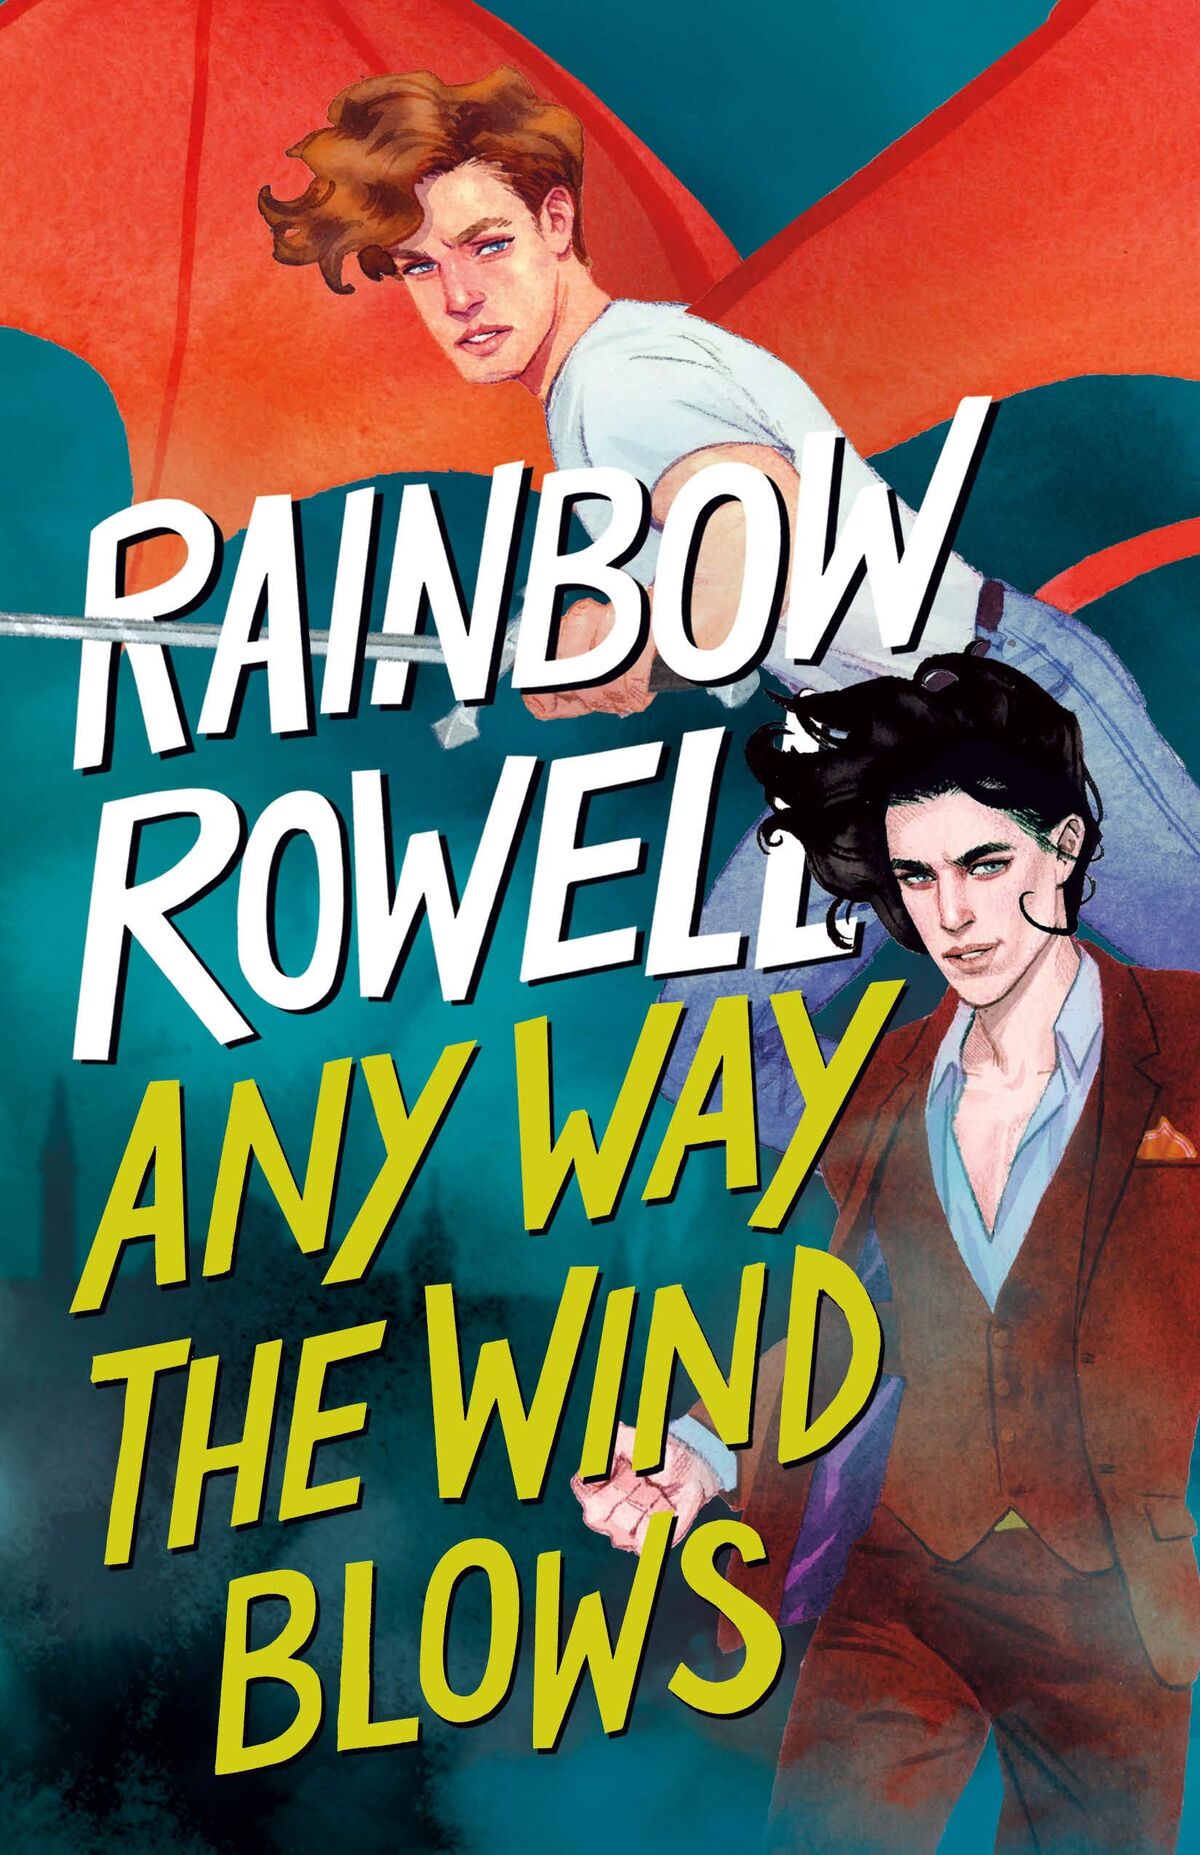 Wayward Son, Rainbow Rowell Wikia